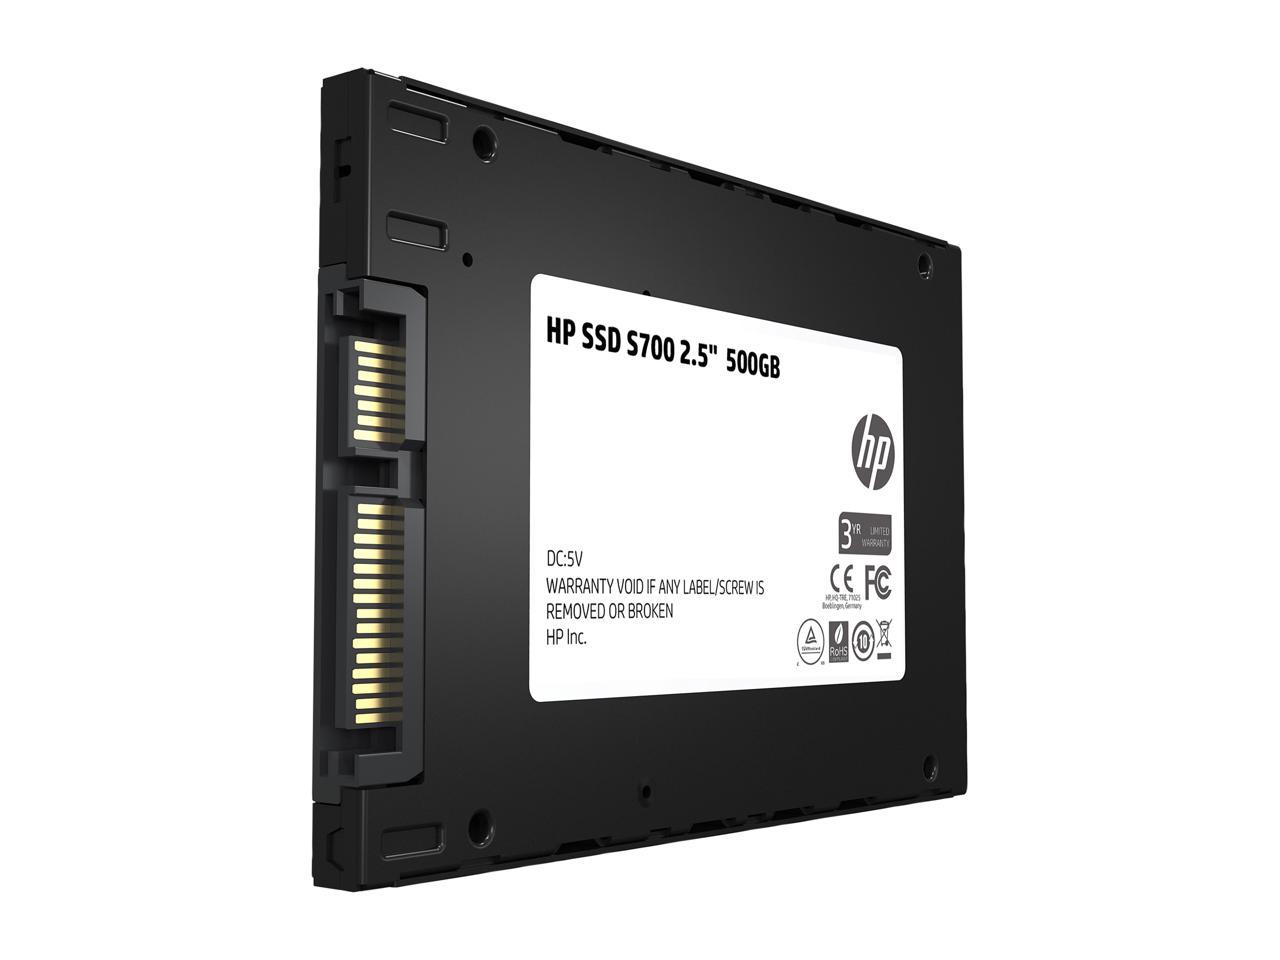 HP SSD 500 GB S700 M.2 560MB/s Read 510MB/s Write Solid State Drive New ct 